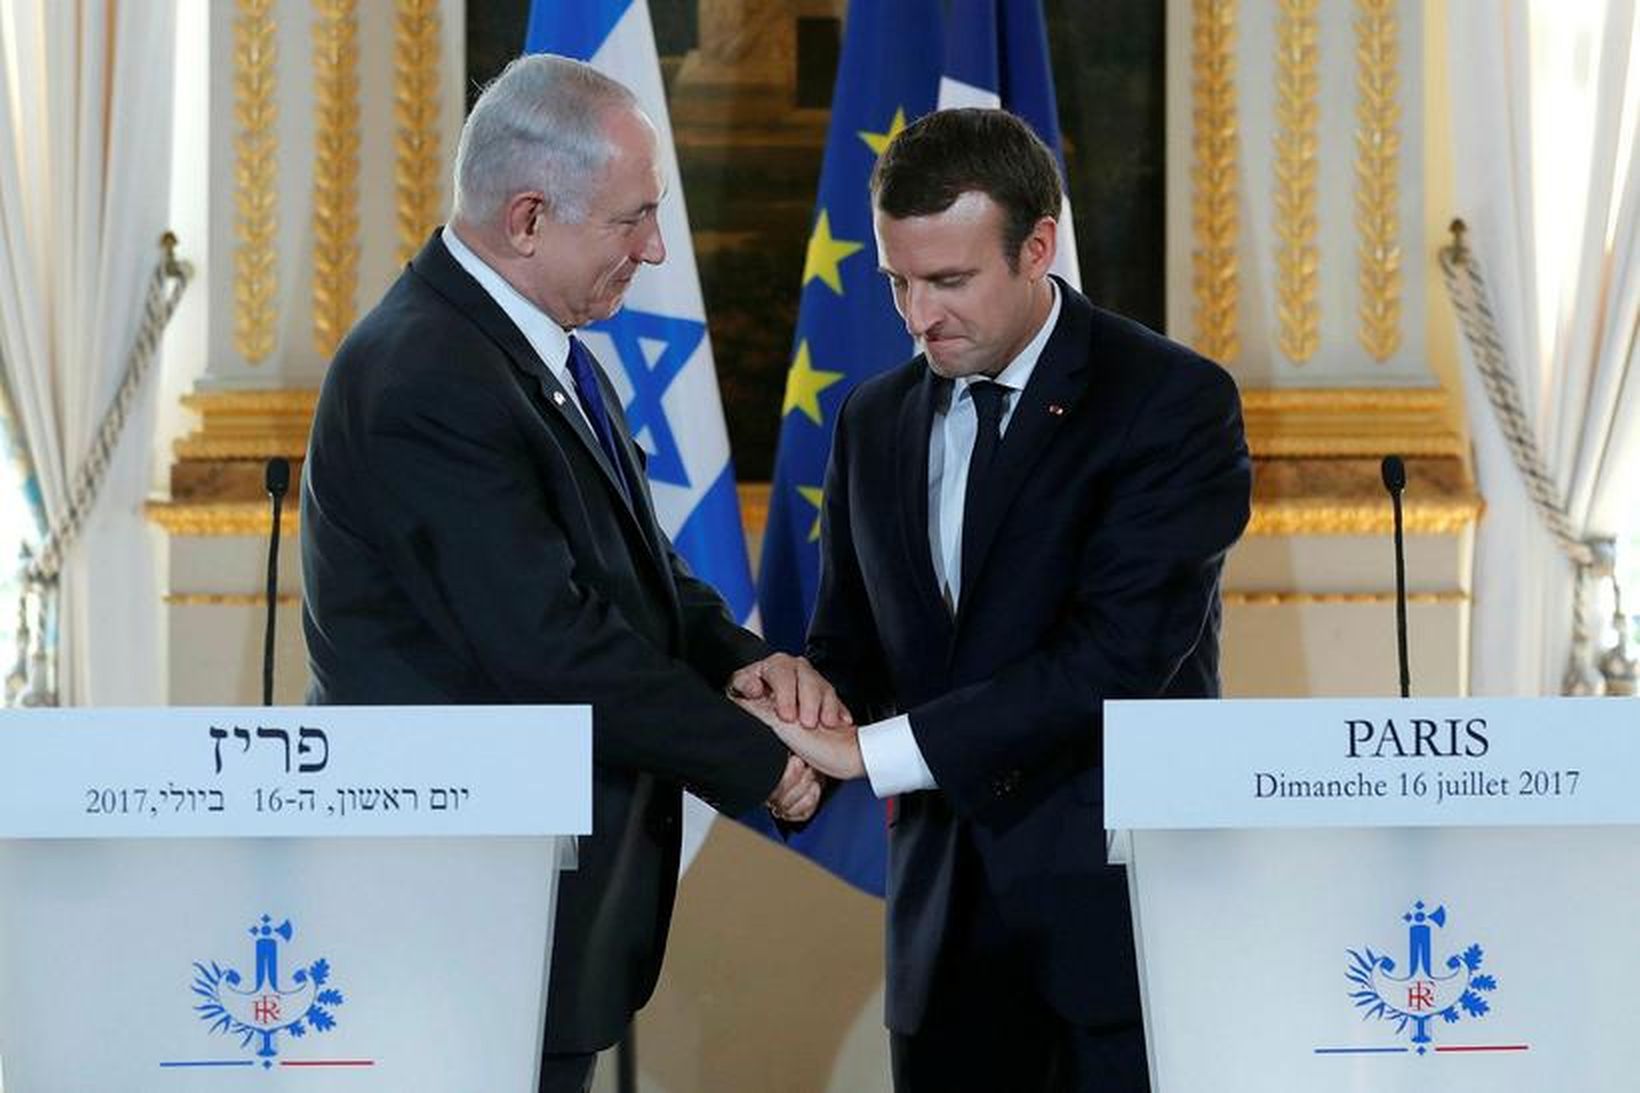 Benjamin Netanyahu, forsætisráðherra Ísrael og Emmanuel Macron, forseti Frakklands við …